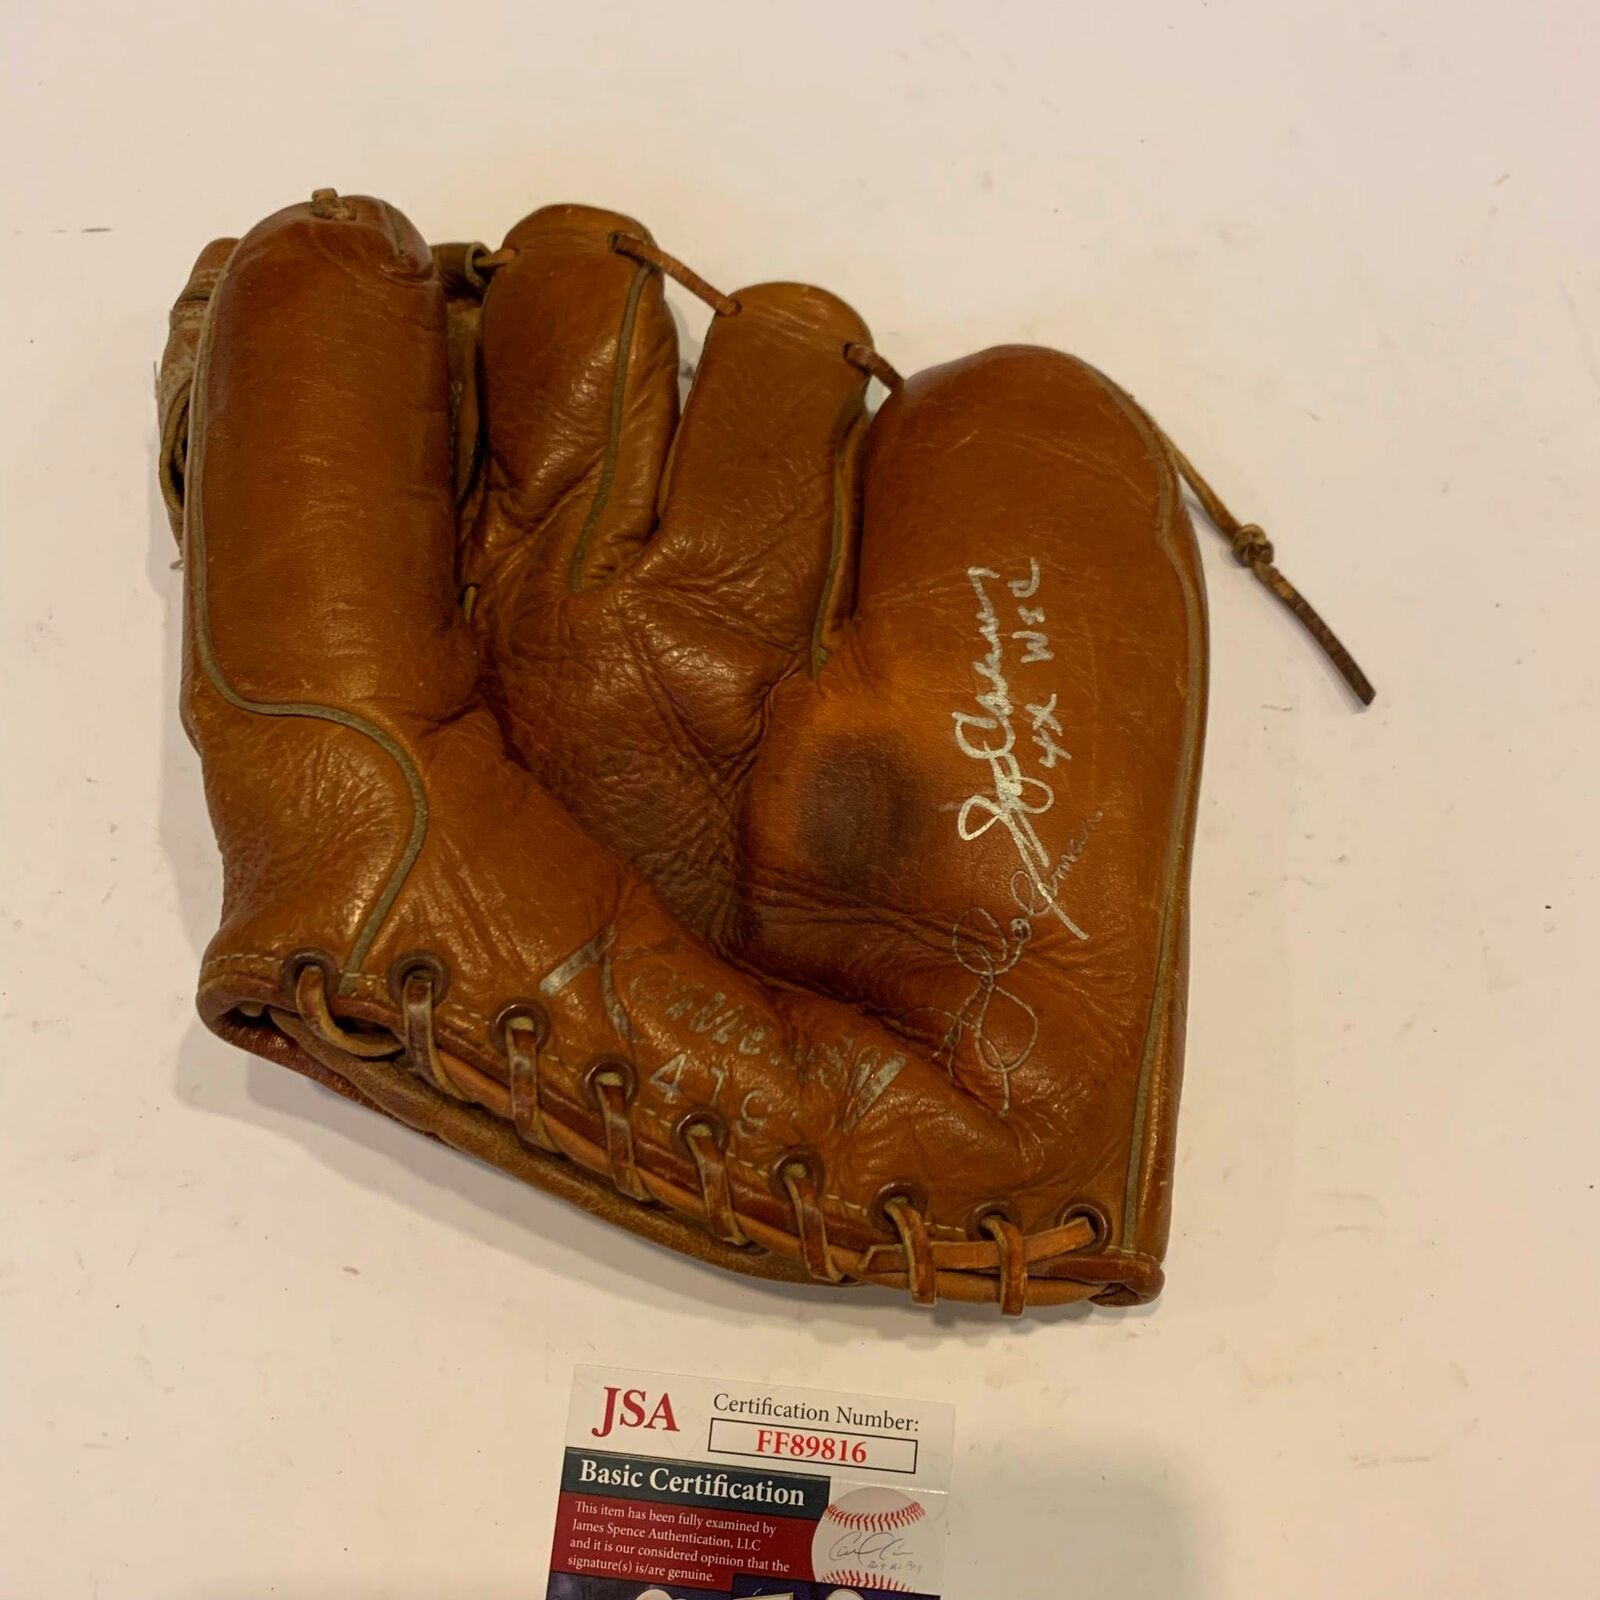 1950 baseball glove